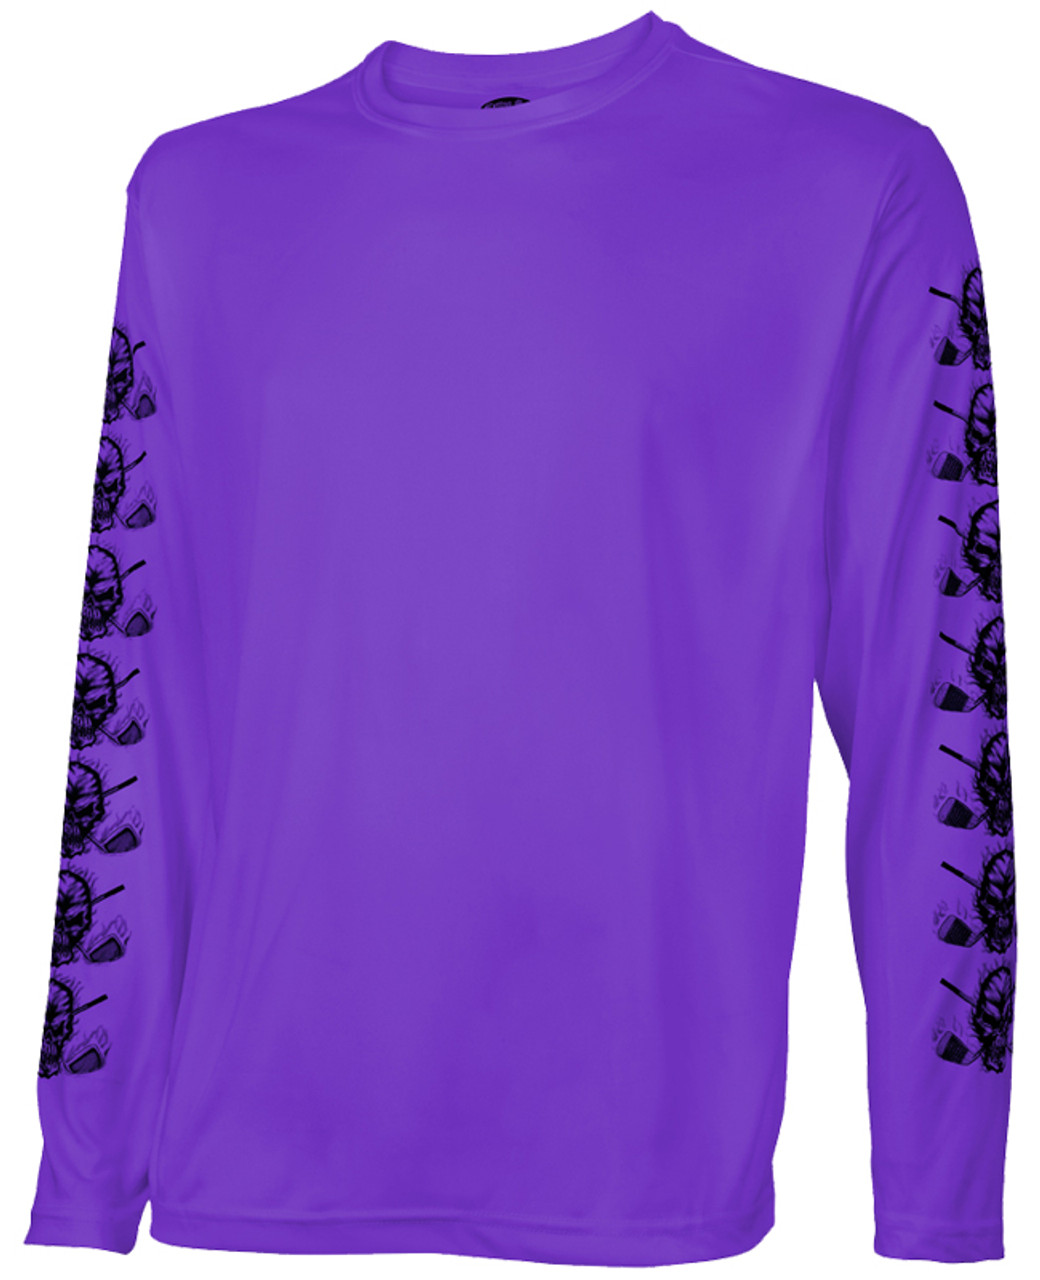 purple under shirt